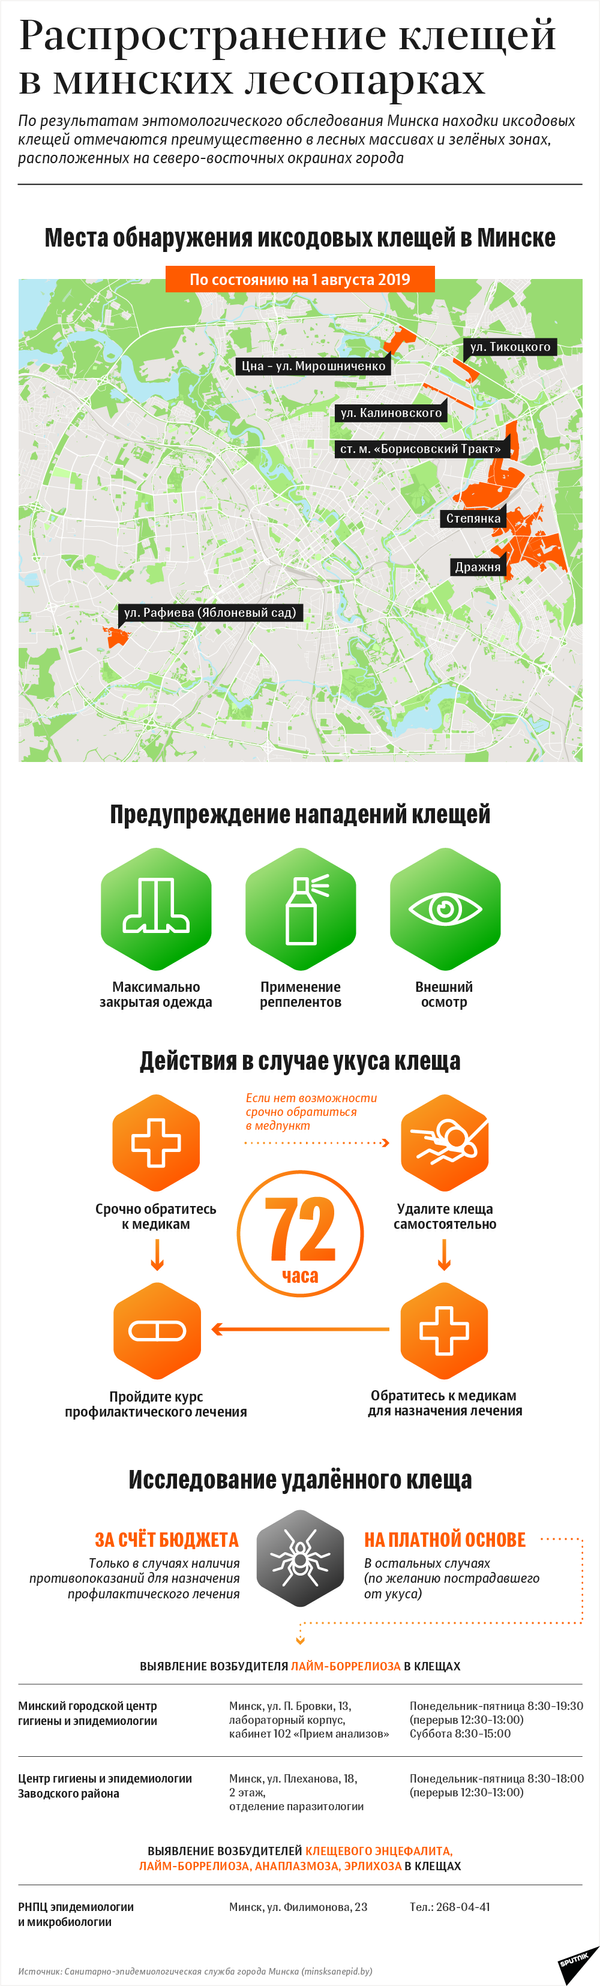 Схема распространения клещей в Минске: август–2019 | Инфографика sputnik.by - Sputnik Беларусь